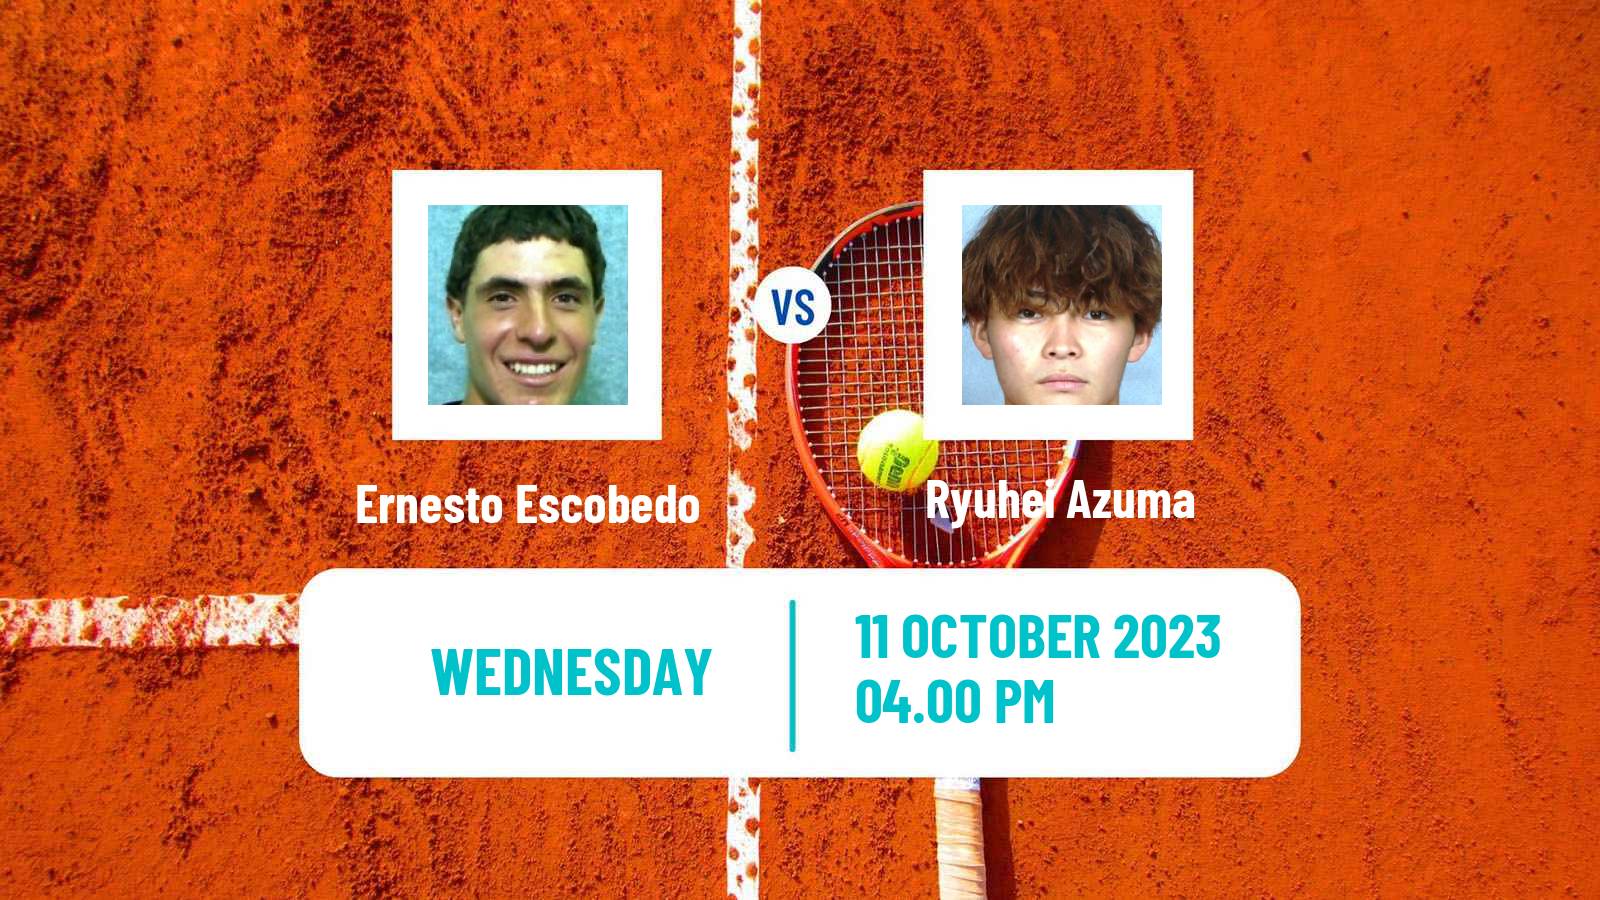 Tennis ITF M25 Zapopan Men Ernesto Escobedo - Ryuhei Azuma